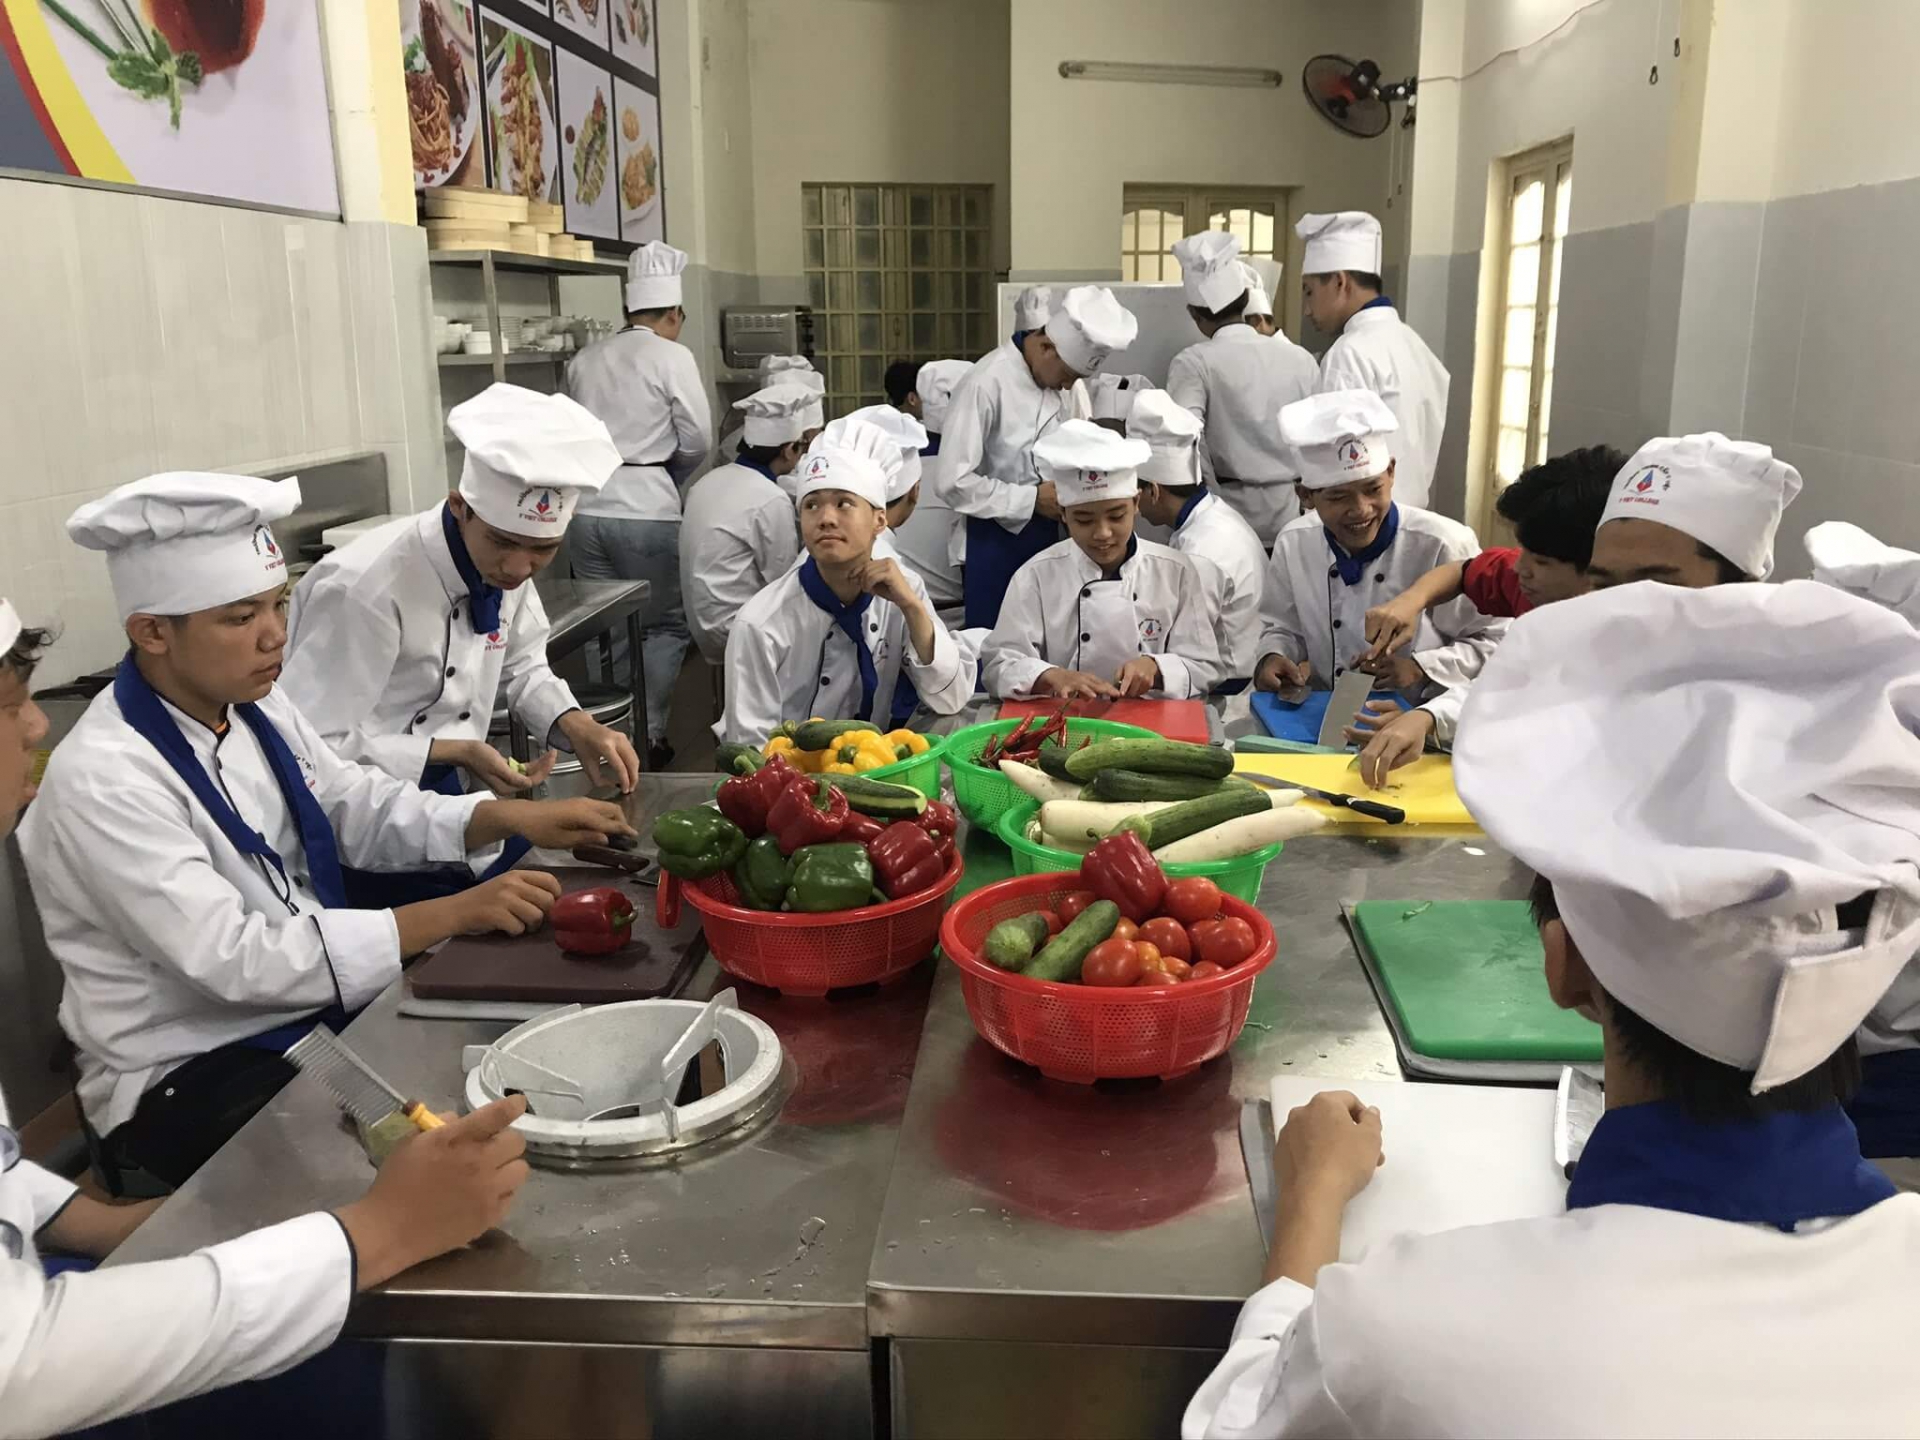 Lợi ích các khóa học nghề ban đêm tại Ý VIỆT -  Một buổi học của lớp học nấu ăn 